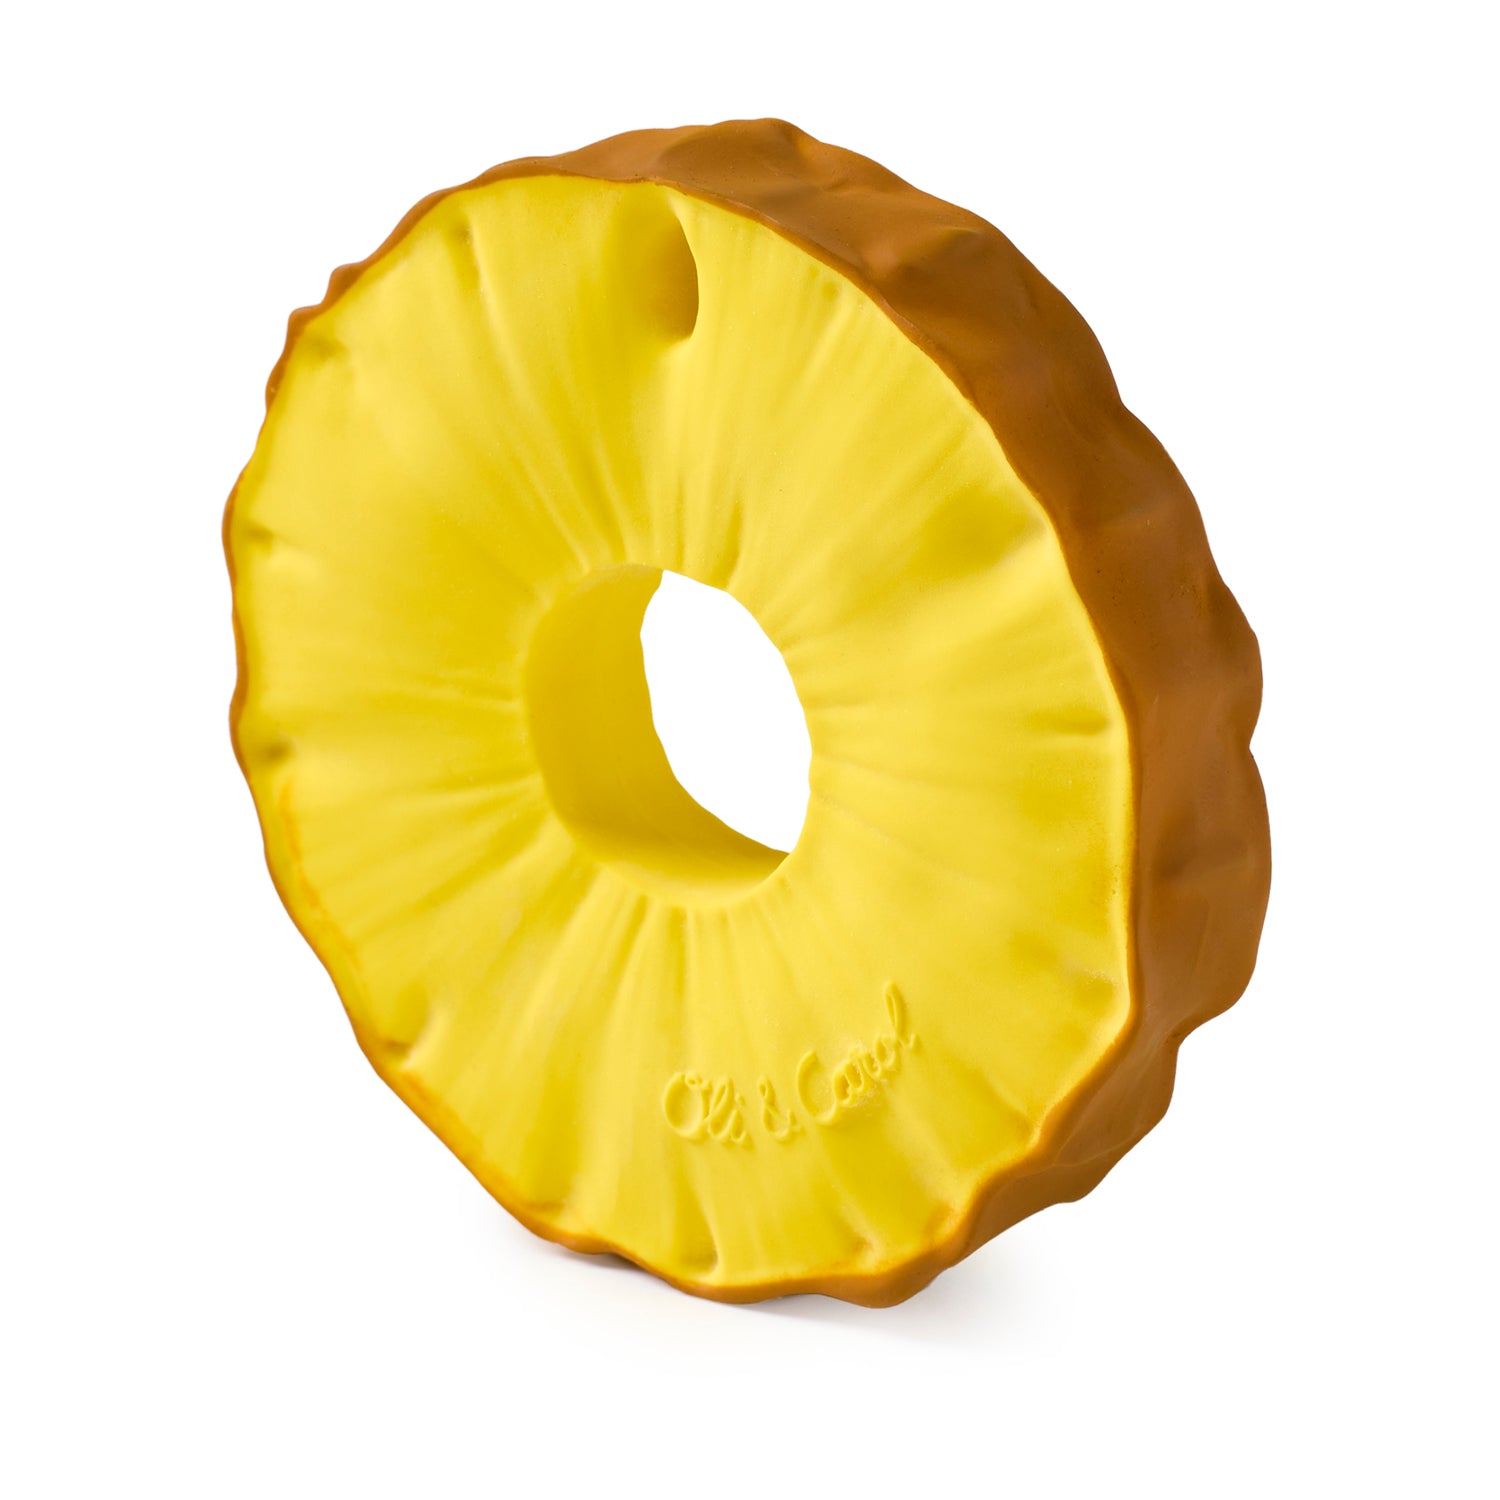 Ananas the Pineapple – Oli & Carol US